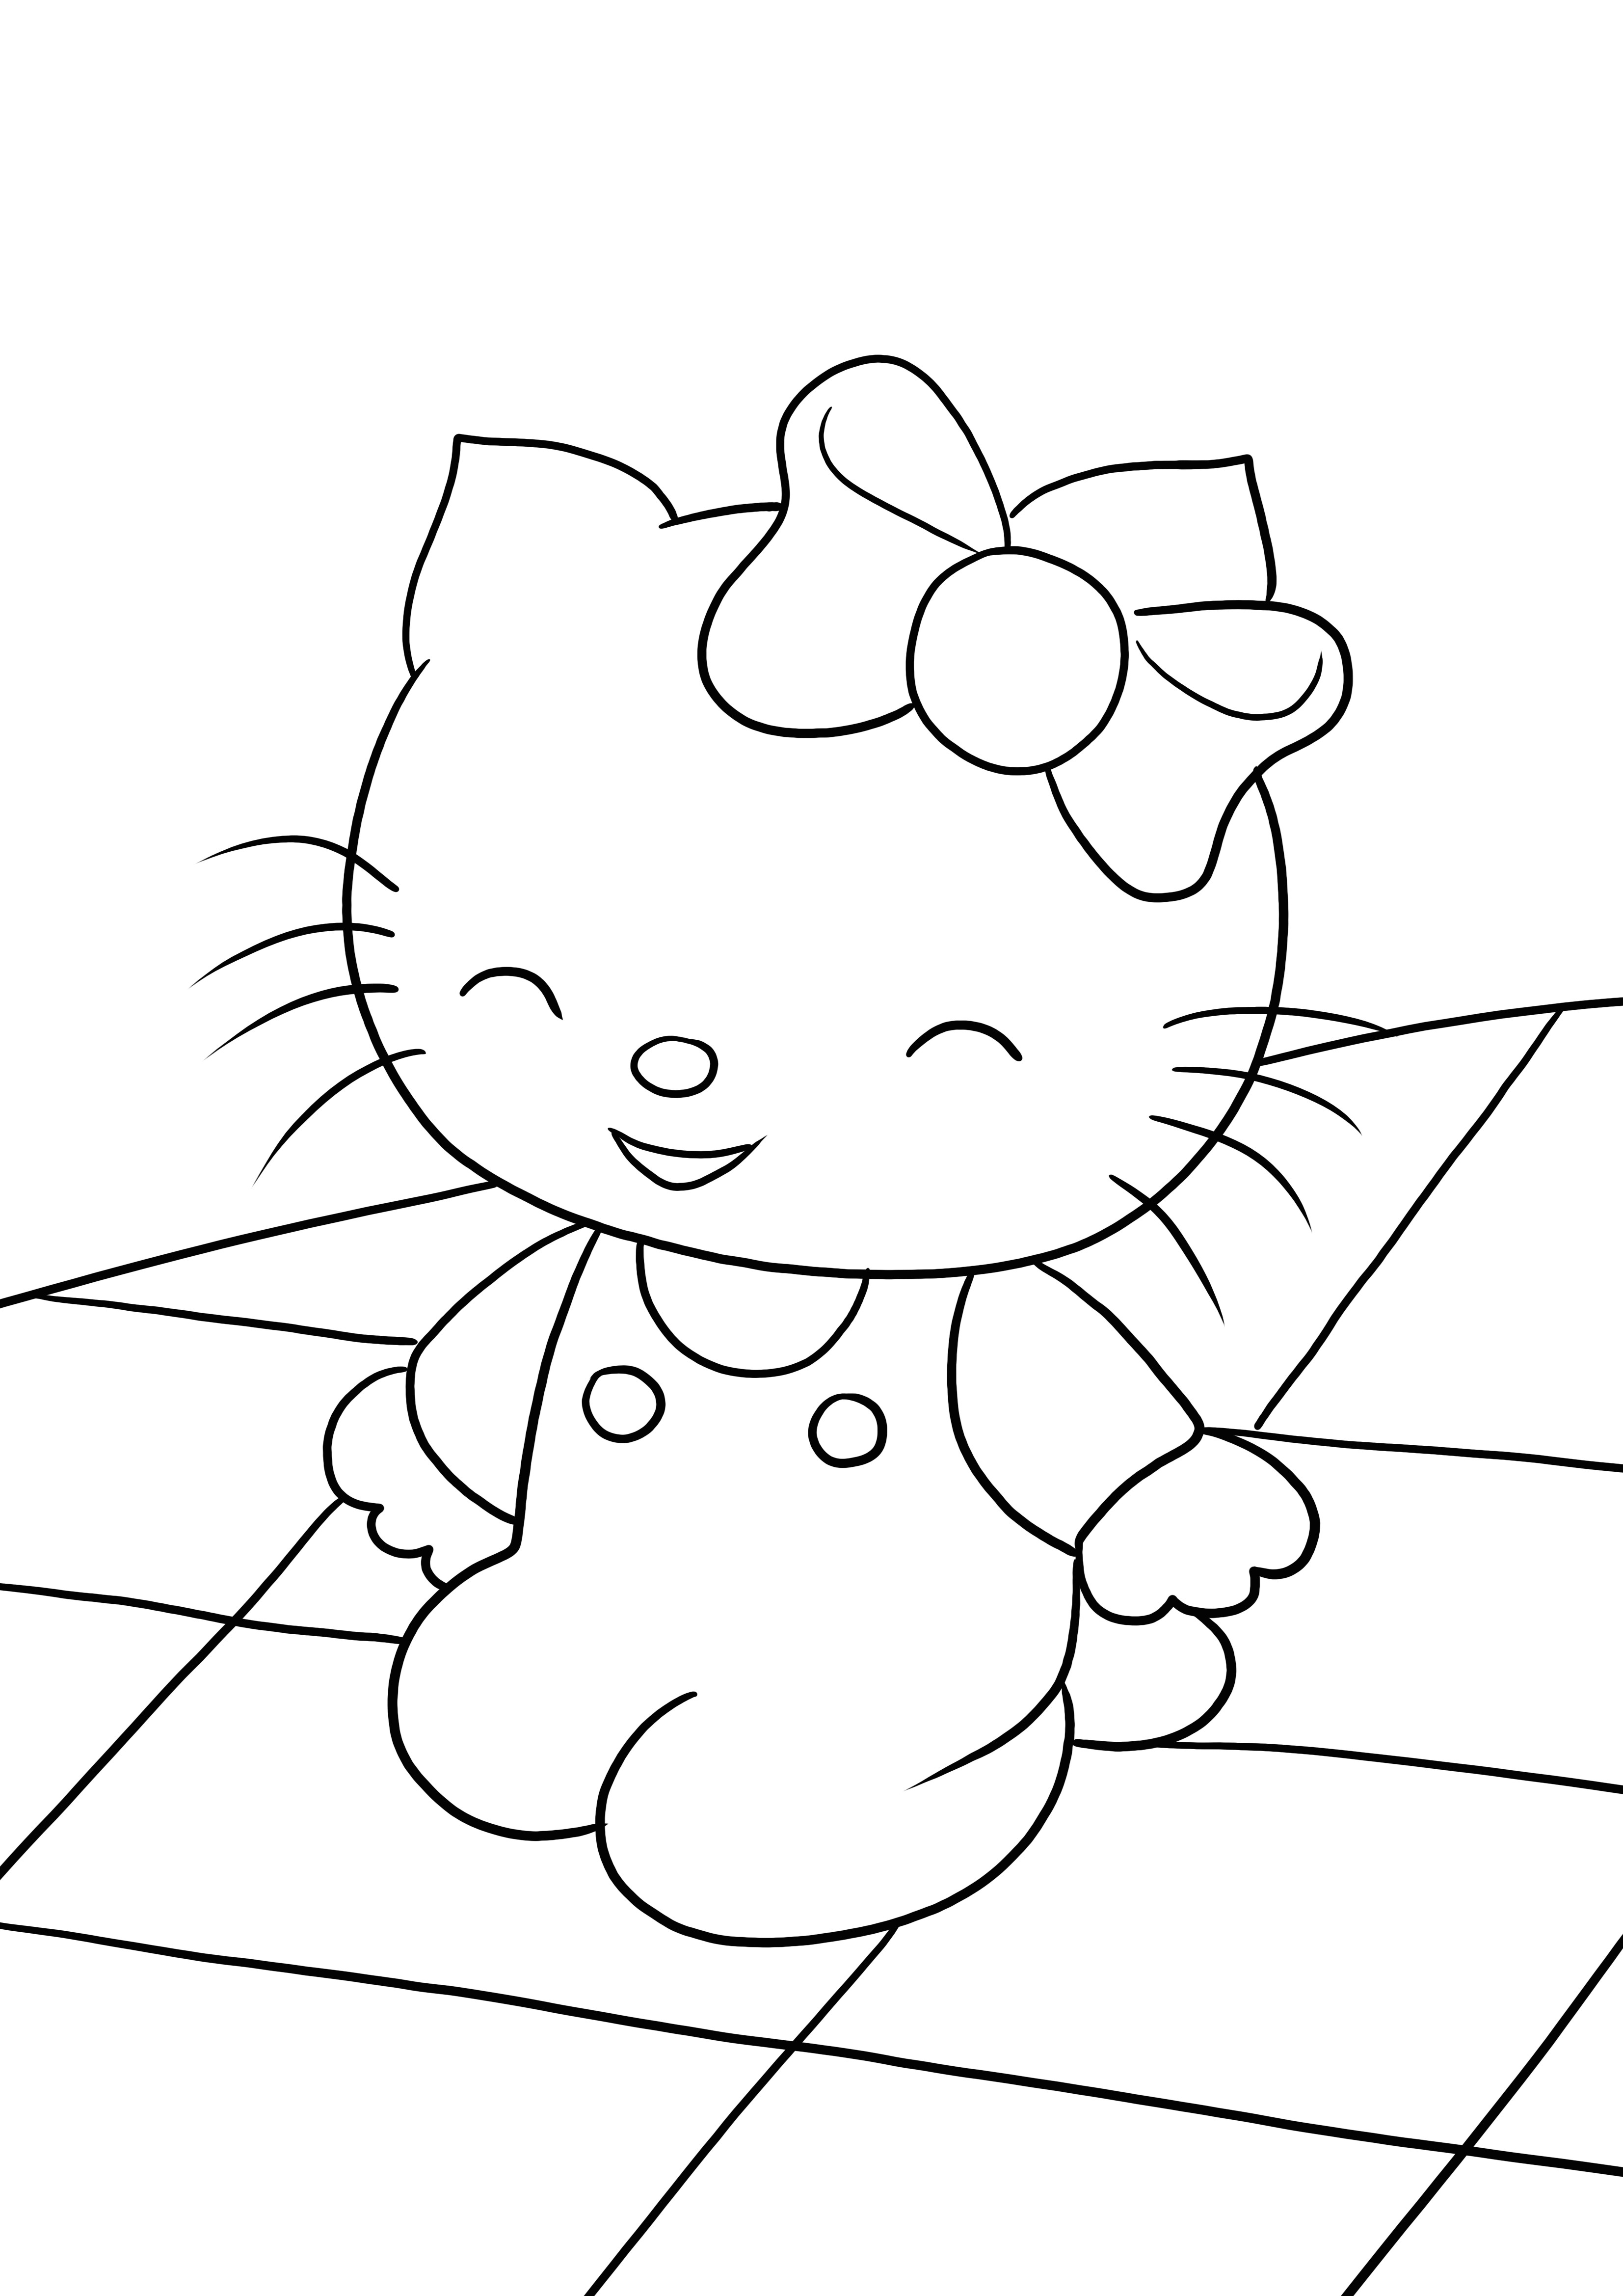 Notre Happy Hello Kitty est là et prêt à être colorié et imprimé gratuitement